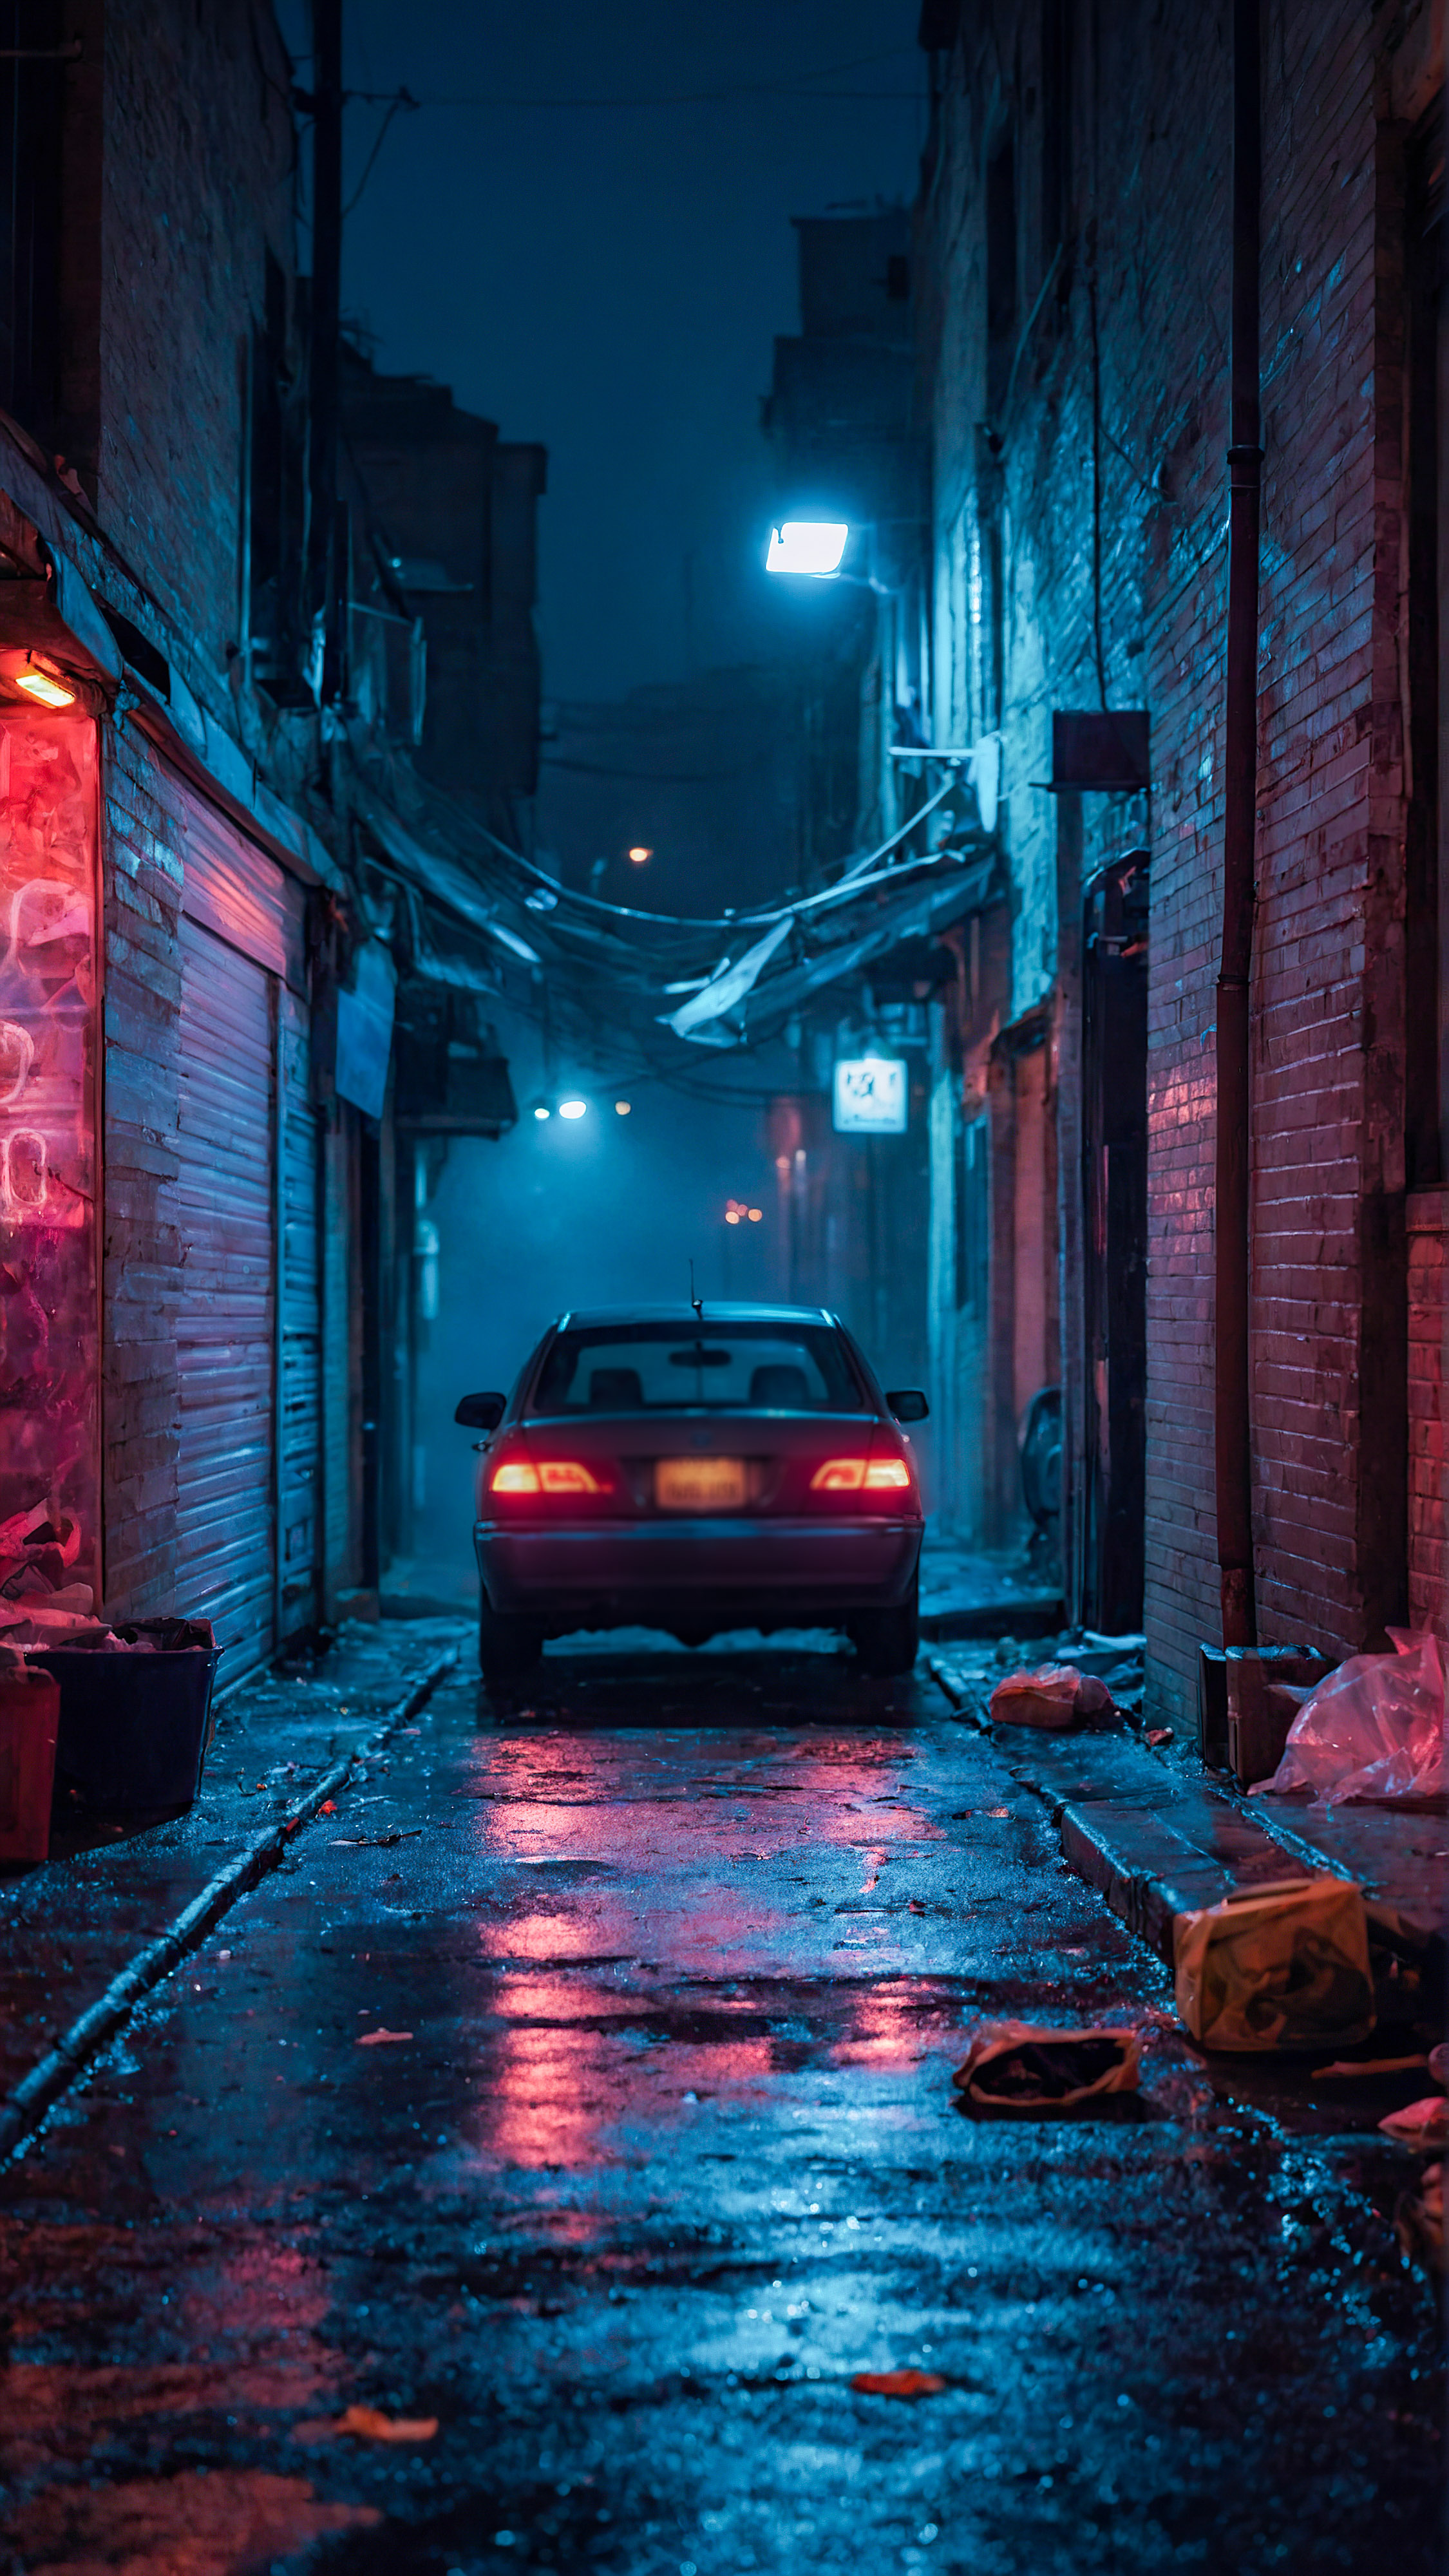 Capturez l'essence de la nuit avec notre meilleur fond d'écran iOS, une ruelle faiblement éclairée et brumeuse la nuit, illuminée par des enseignes néon, avec une voiture garée au milieu de déchets éparpillés.